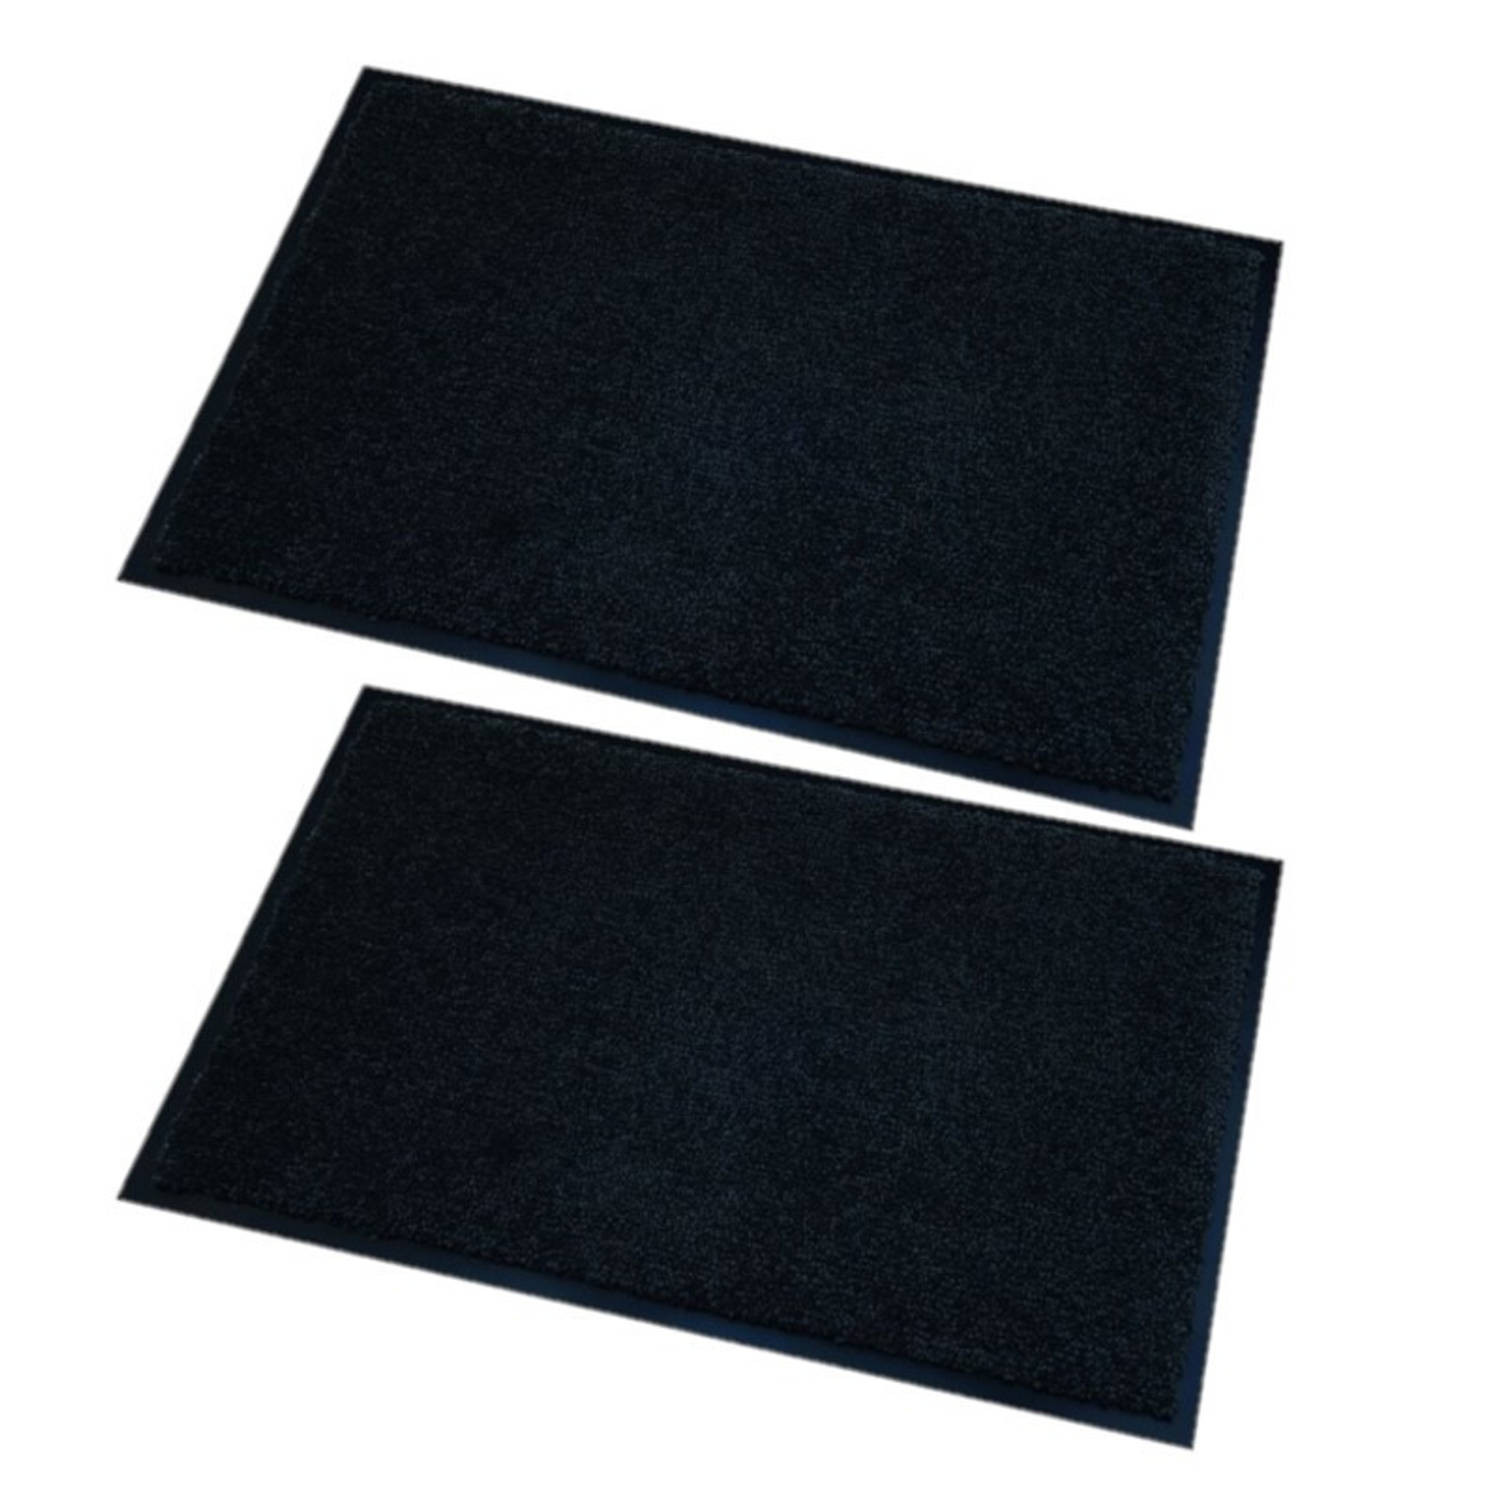 2x stuks deurmatten/droogloopmatten Memphis zwart 60 x 80 cm - Deurmatten